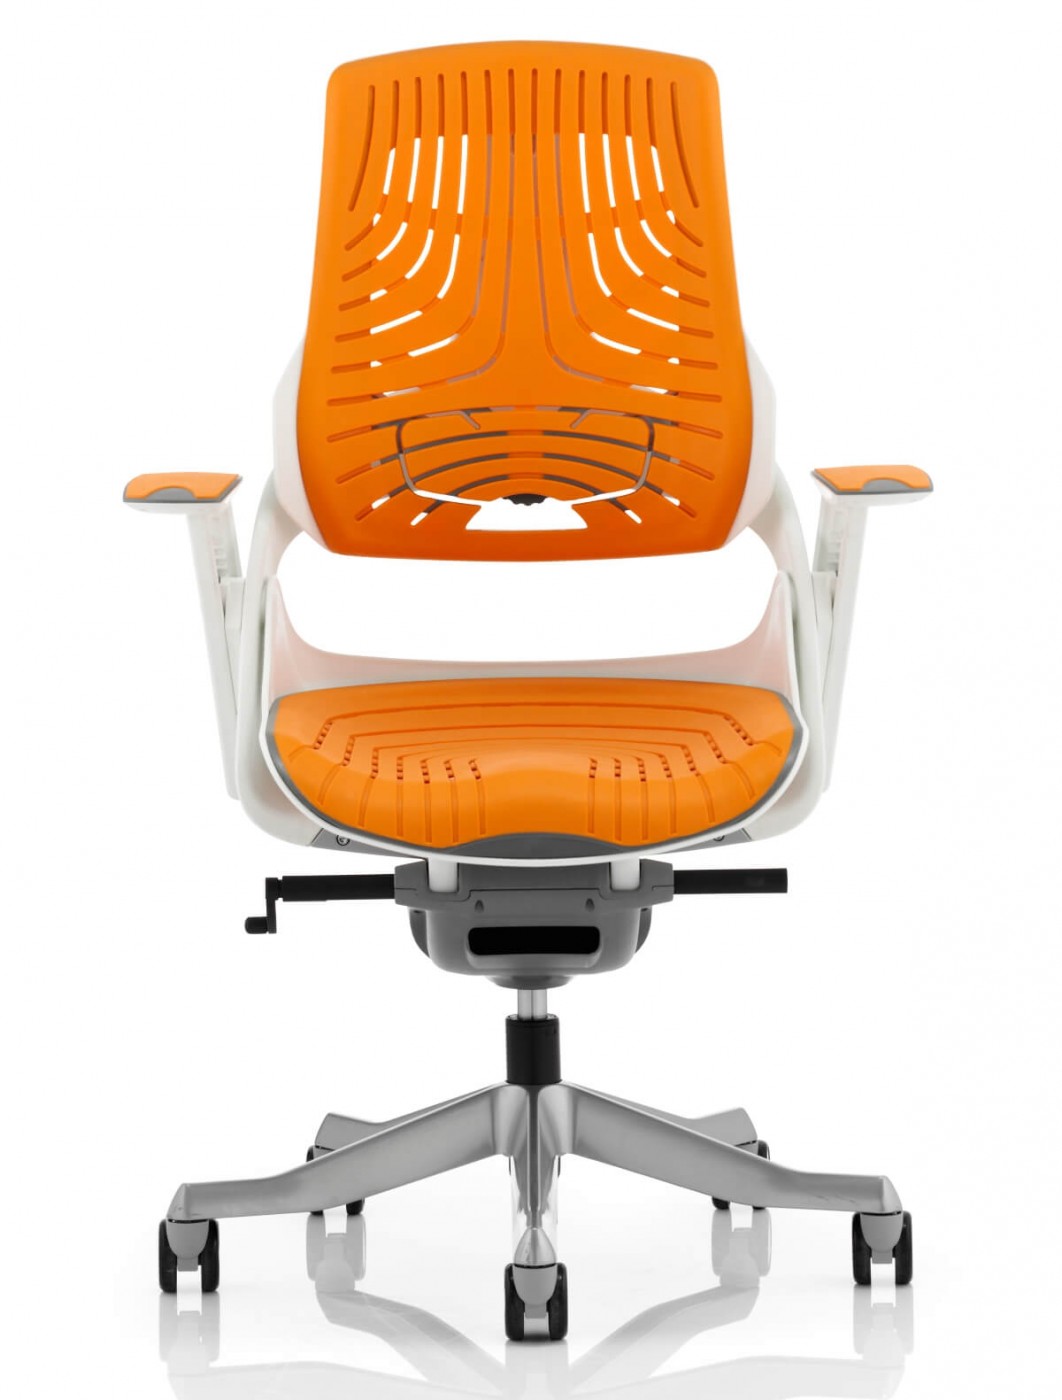 Office Chairs - Zure Orange Executive Elastomer Chair EX000133 | 121